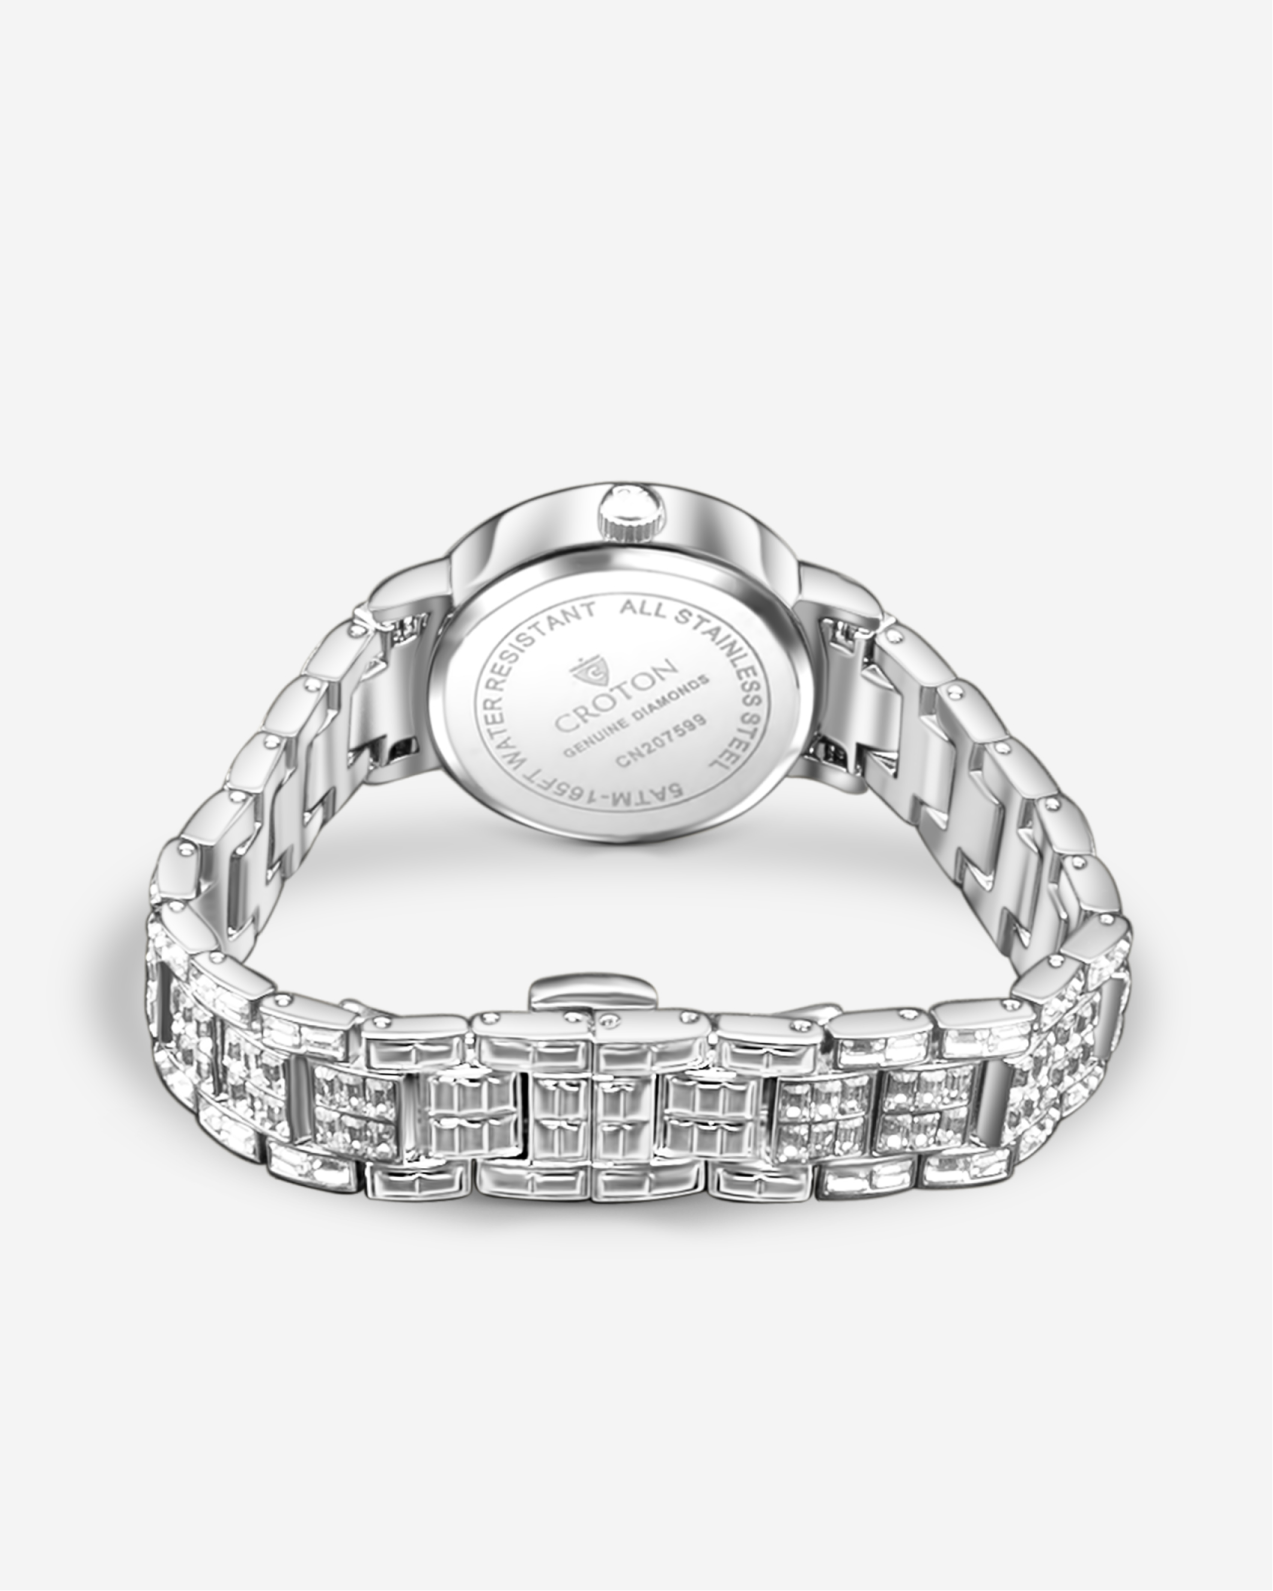 Ladies Silvdertone Quartz Dress Watch with CZ Baguette Dial & Bracelet